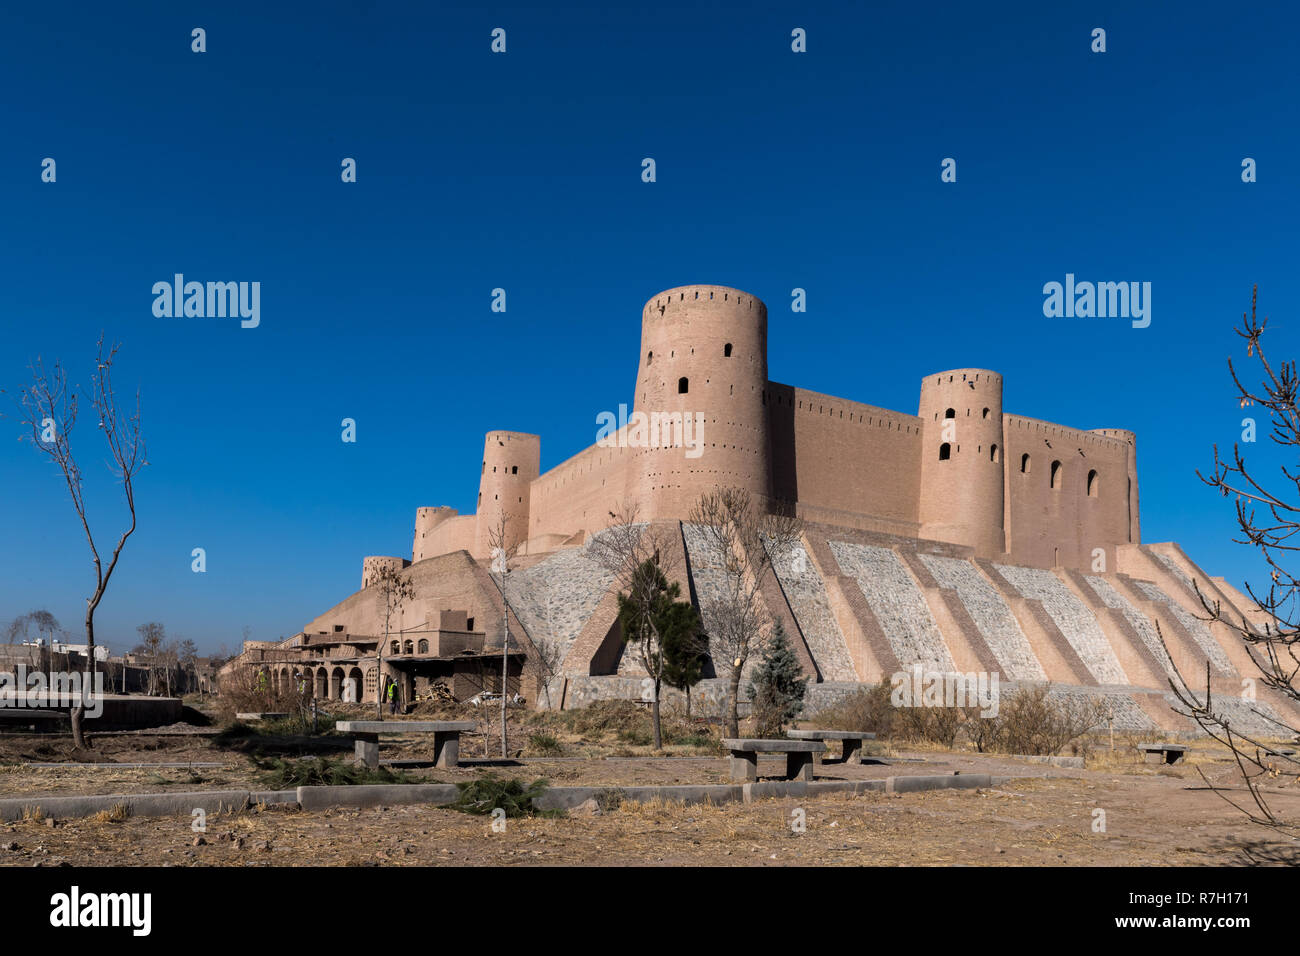 Herat Citadel In Winter, Herat, Herat Province, Afghanistan Stock Photo